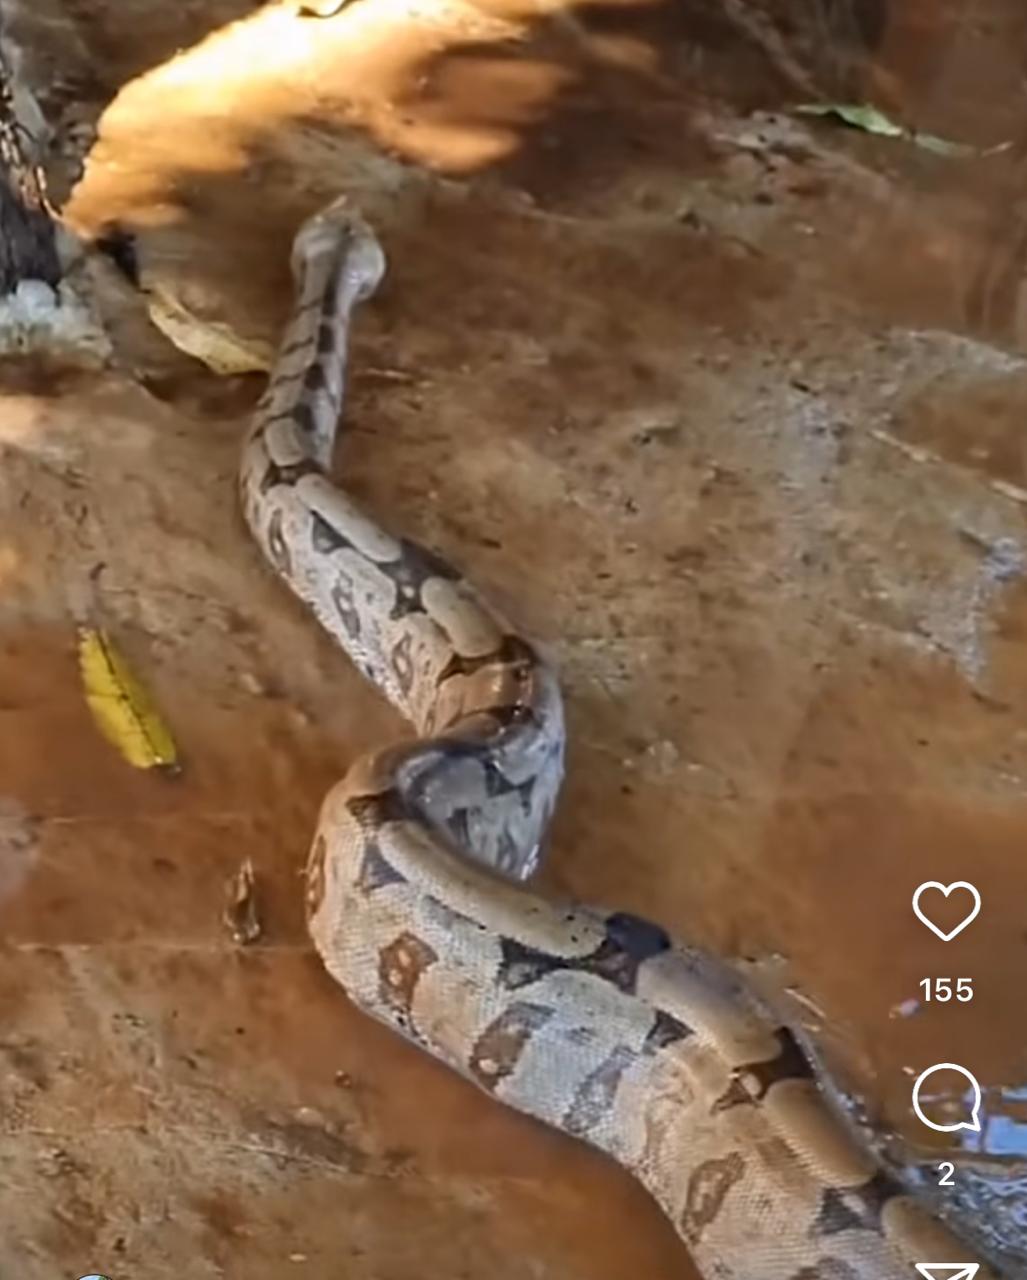 Cobra jiboia gigante passeia em quintal e deixa moradores assombrados: "nunca vi nada igual", diz proprietária